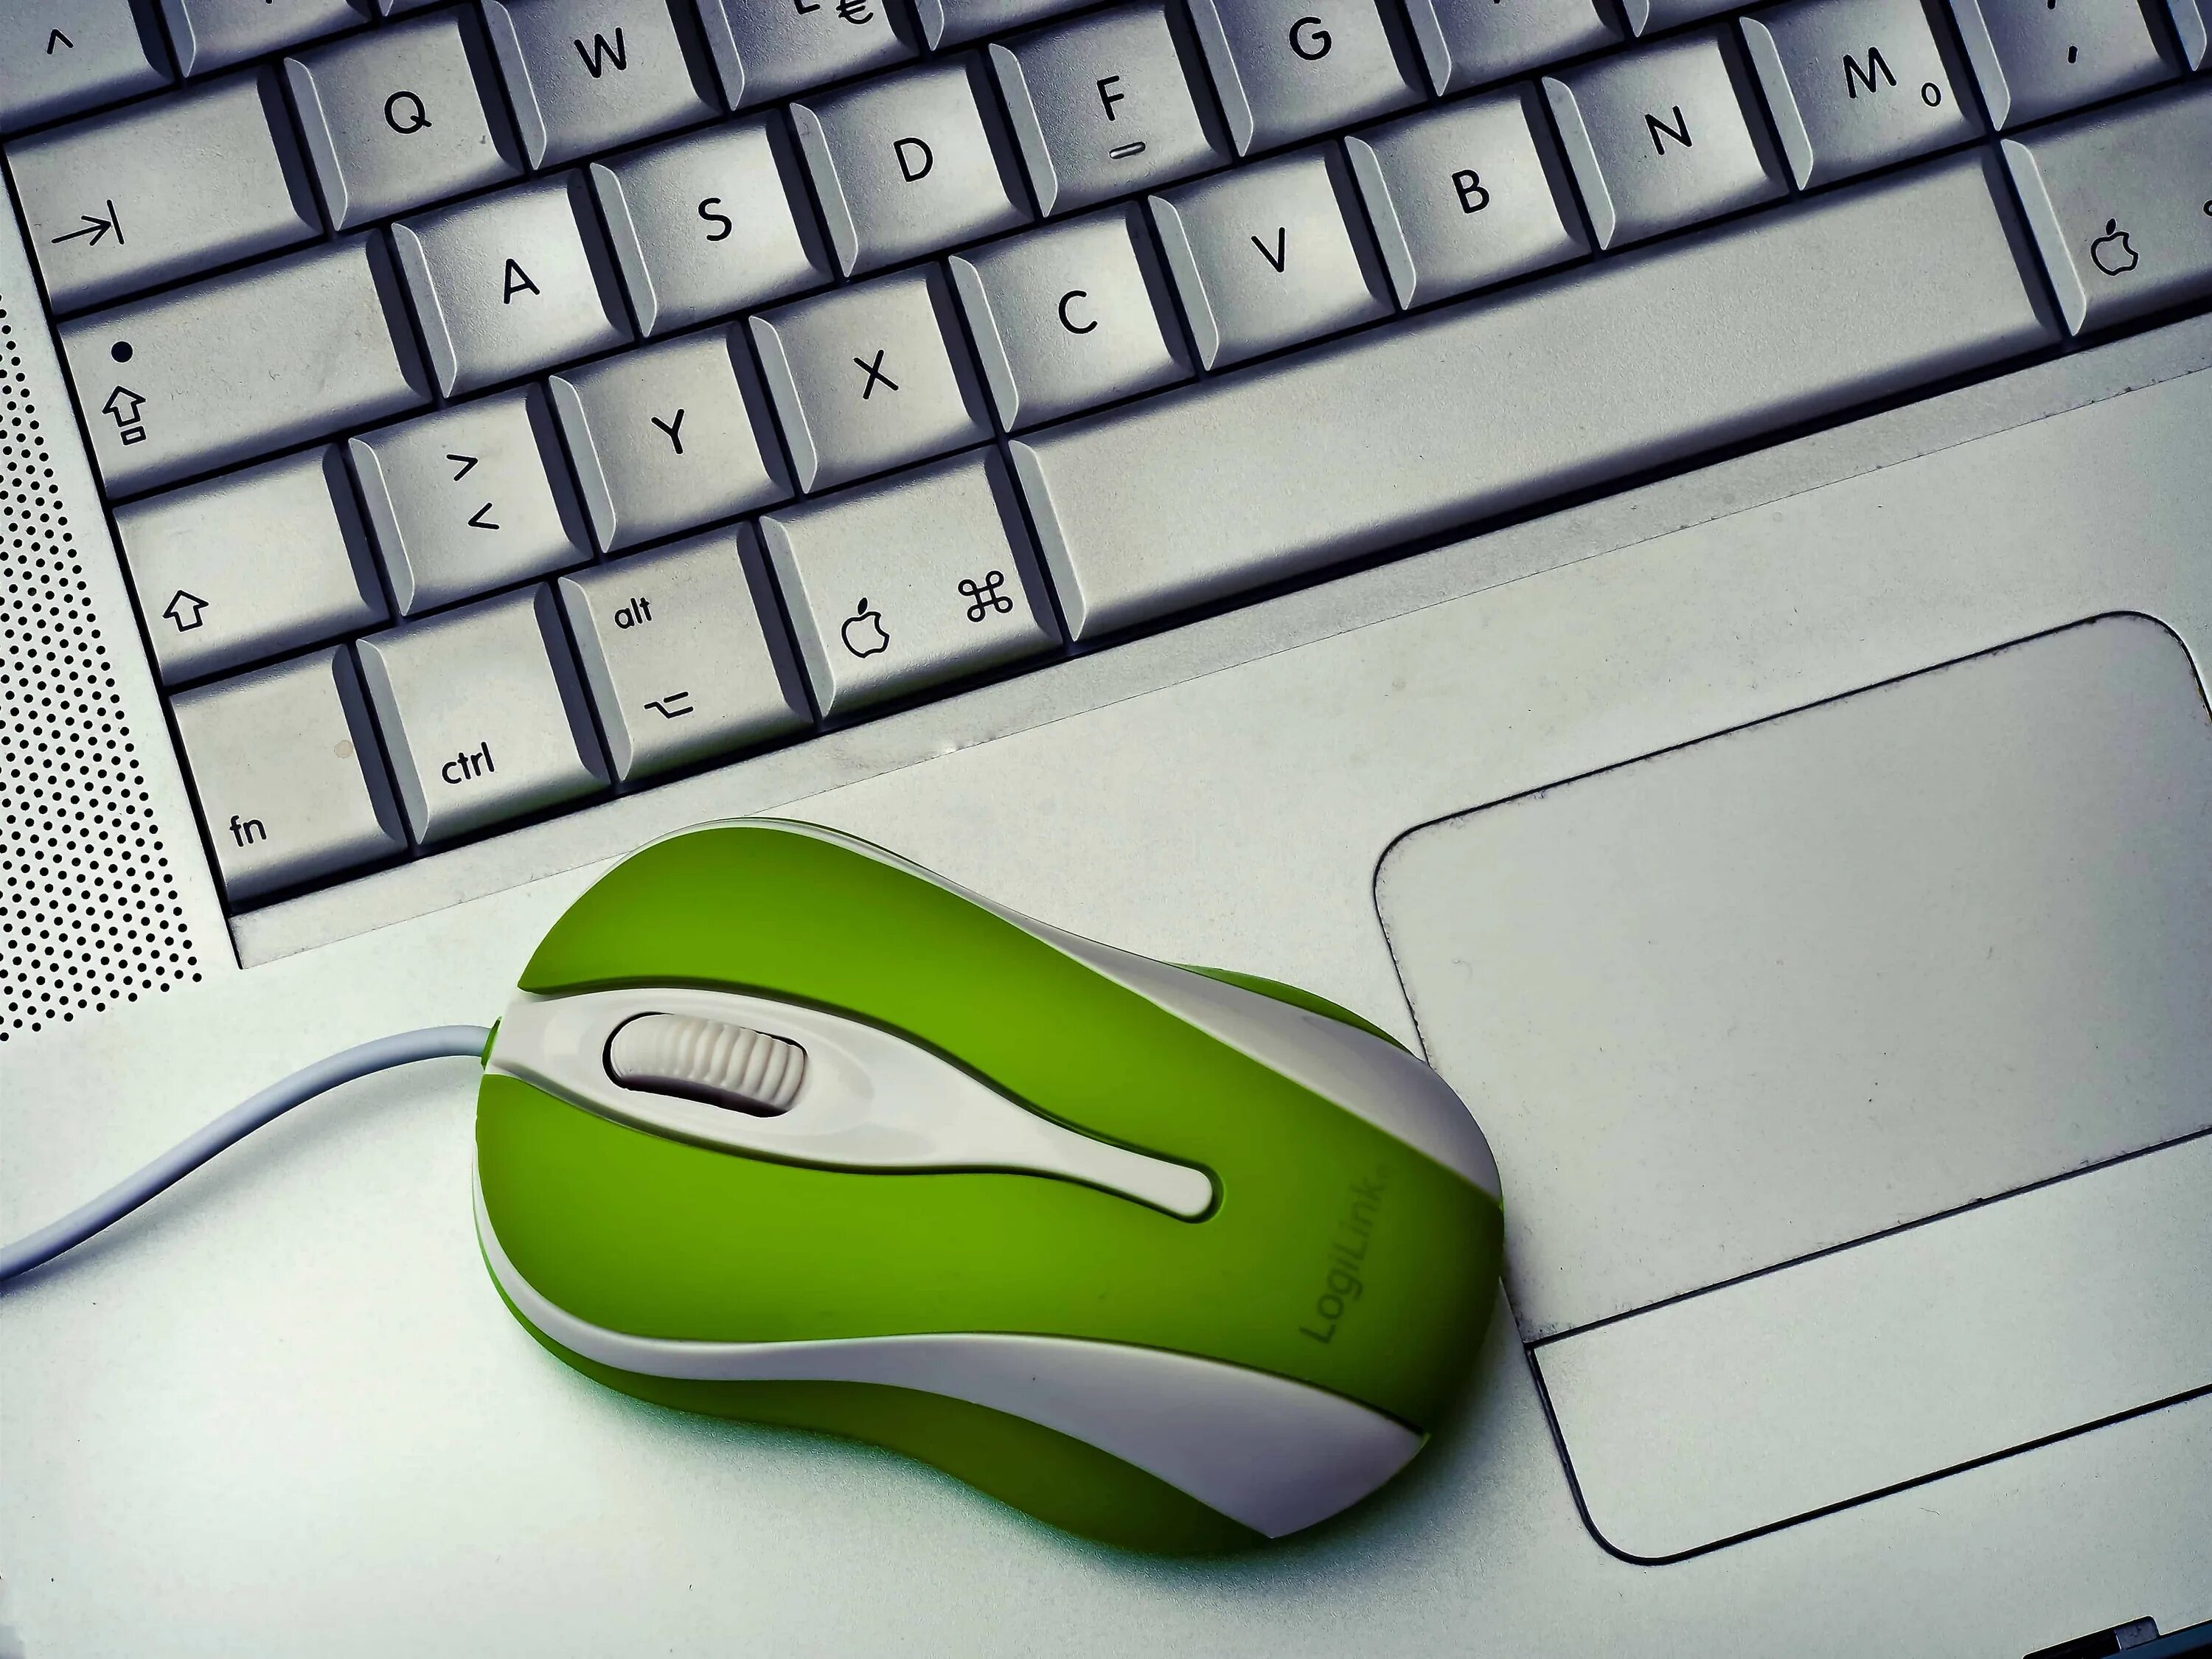 Мышь компьютерная. Компьютерная мышь и клавиатура. Компьютер мышь клавиатура. Компьютерная мышь с компьютером.